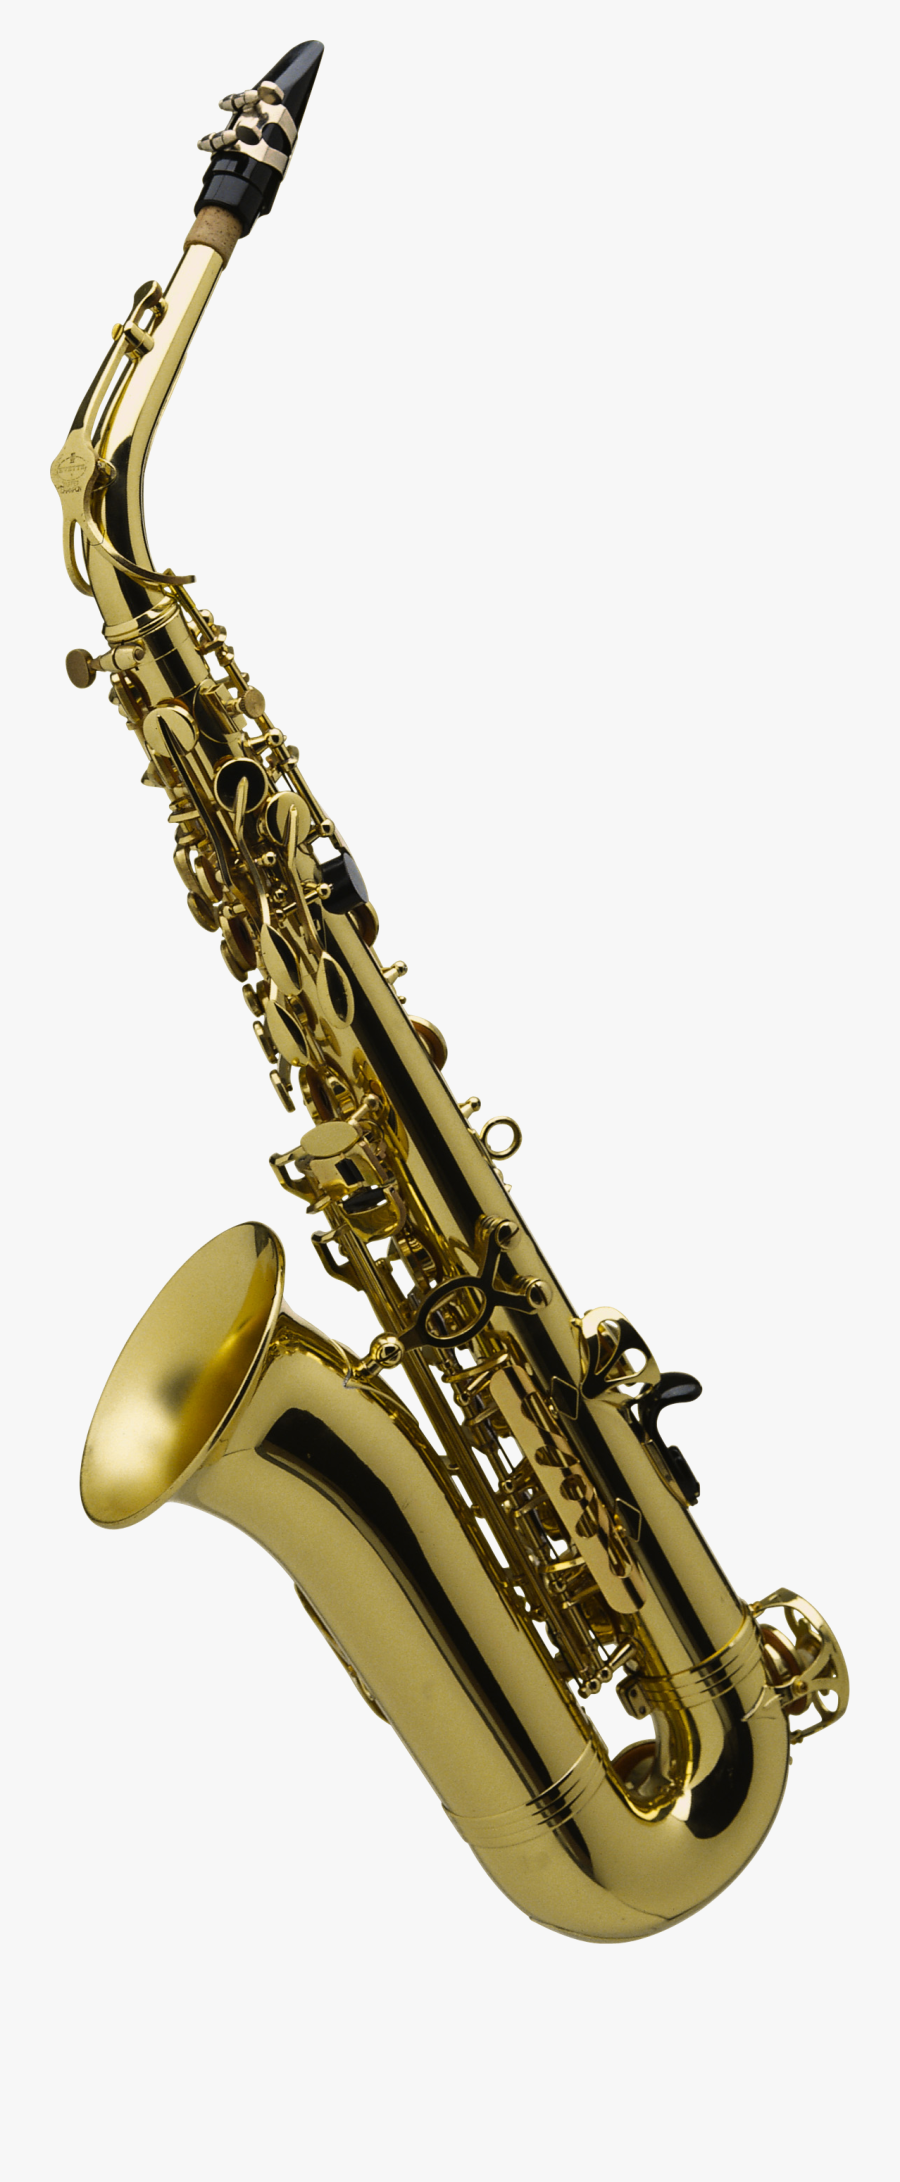 Gold Clipart Saxophone - Saxophone Transparent Background, Transparent Clipart